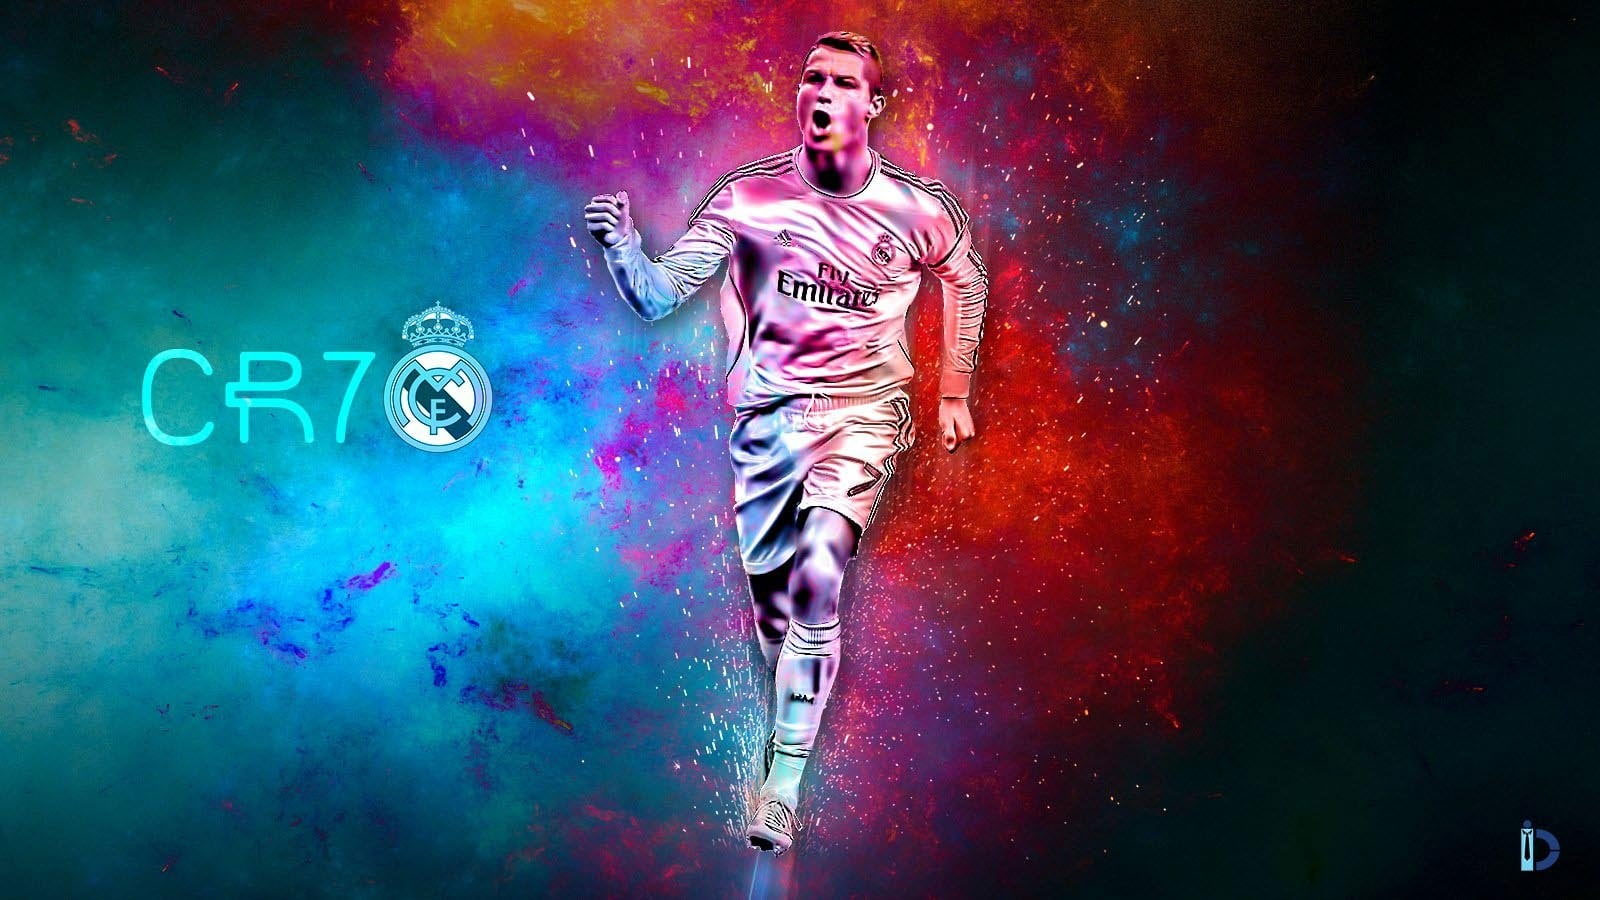 Cristiano Ronaldo wallpaper, sports, soccer